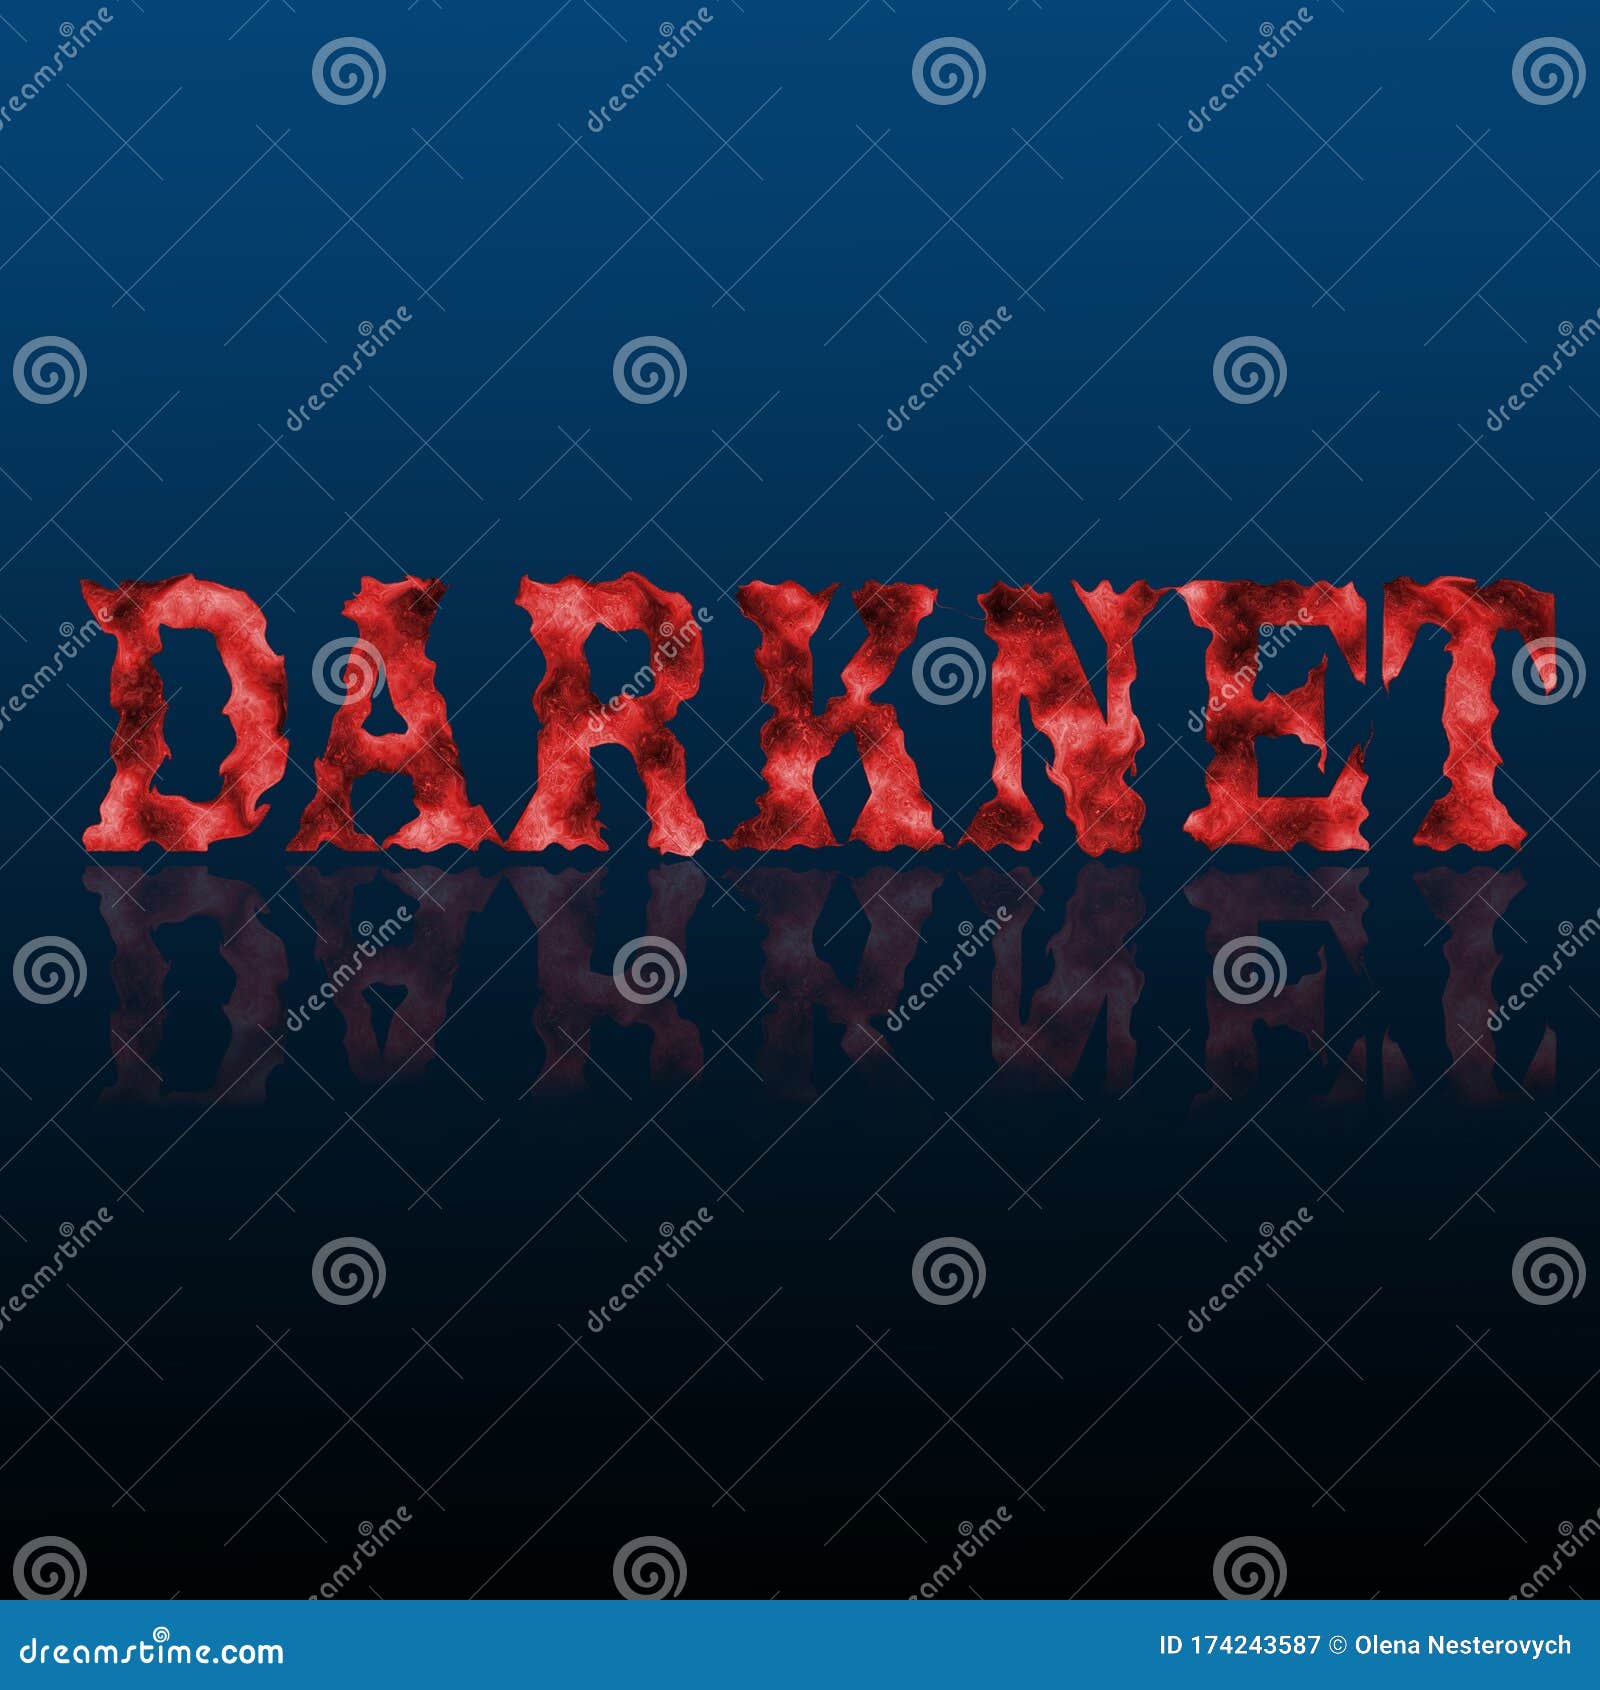 Darknet Markets Still Up